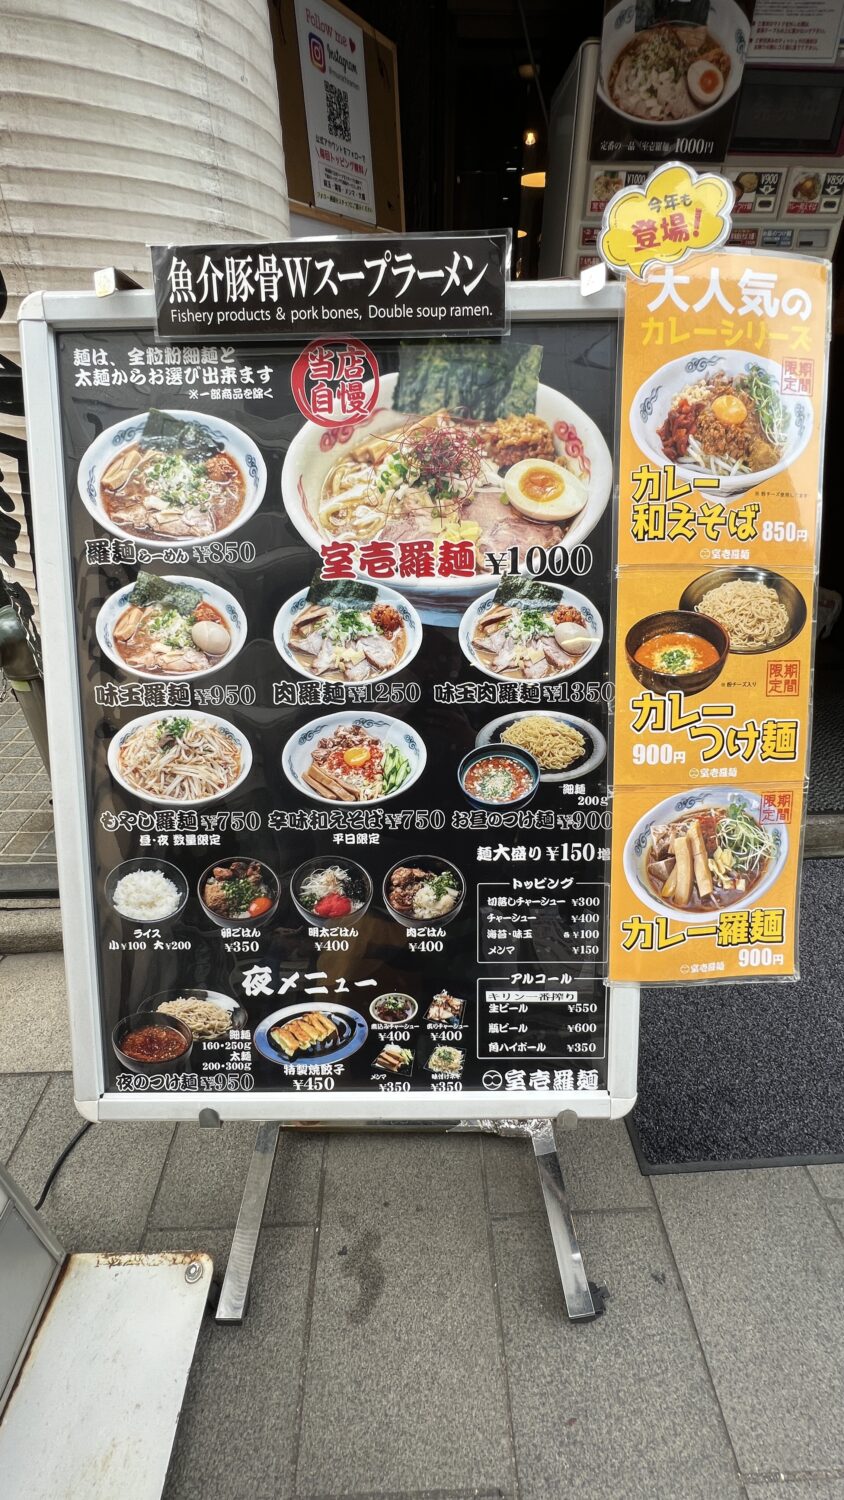 室壱羅麺(むろいち)の入口に置いてあるメニュー看板の写真